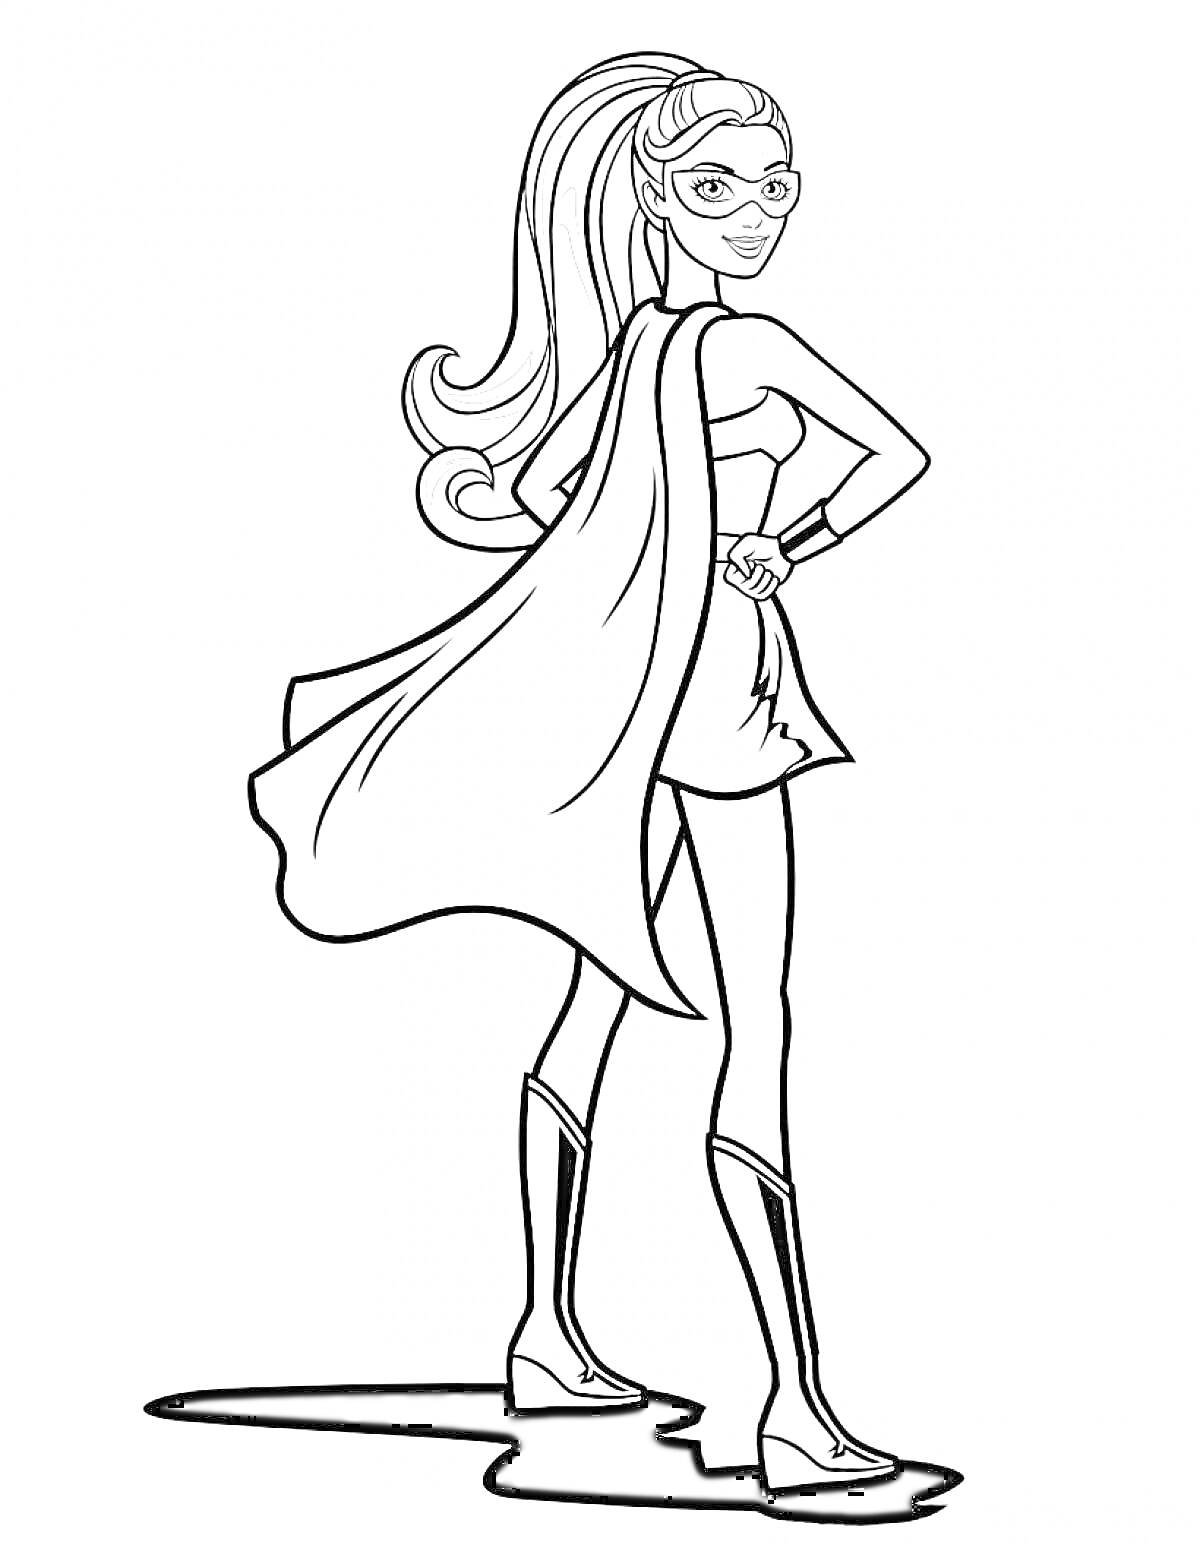 Раскраска Барби Супер Принцесса со свободными волосами, в маске, плаще и сапогах